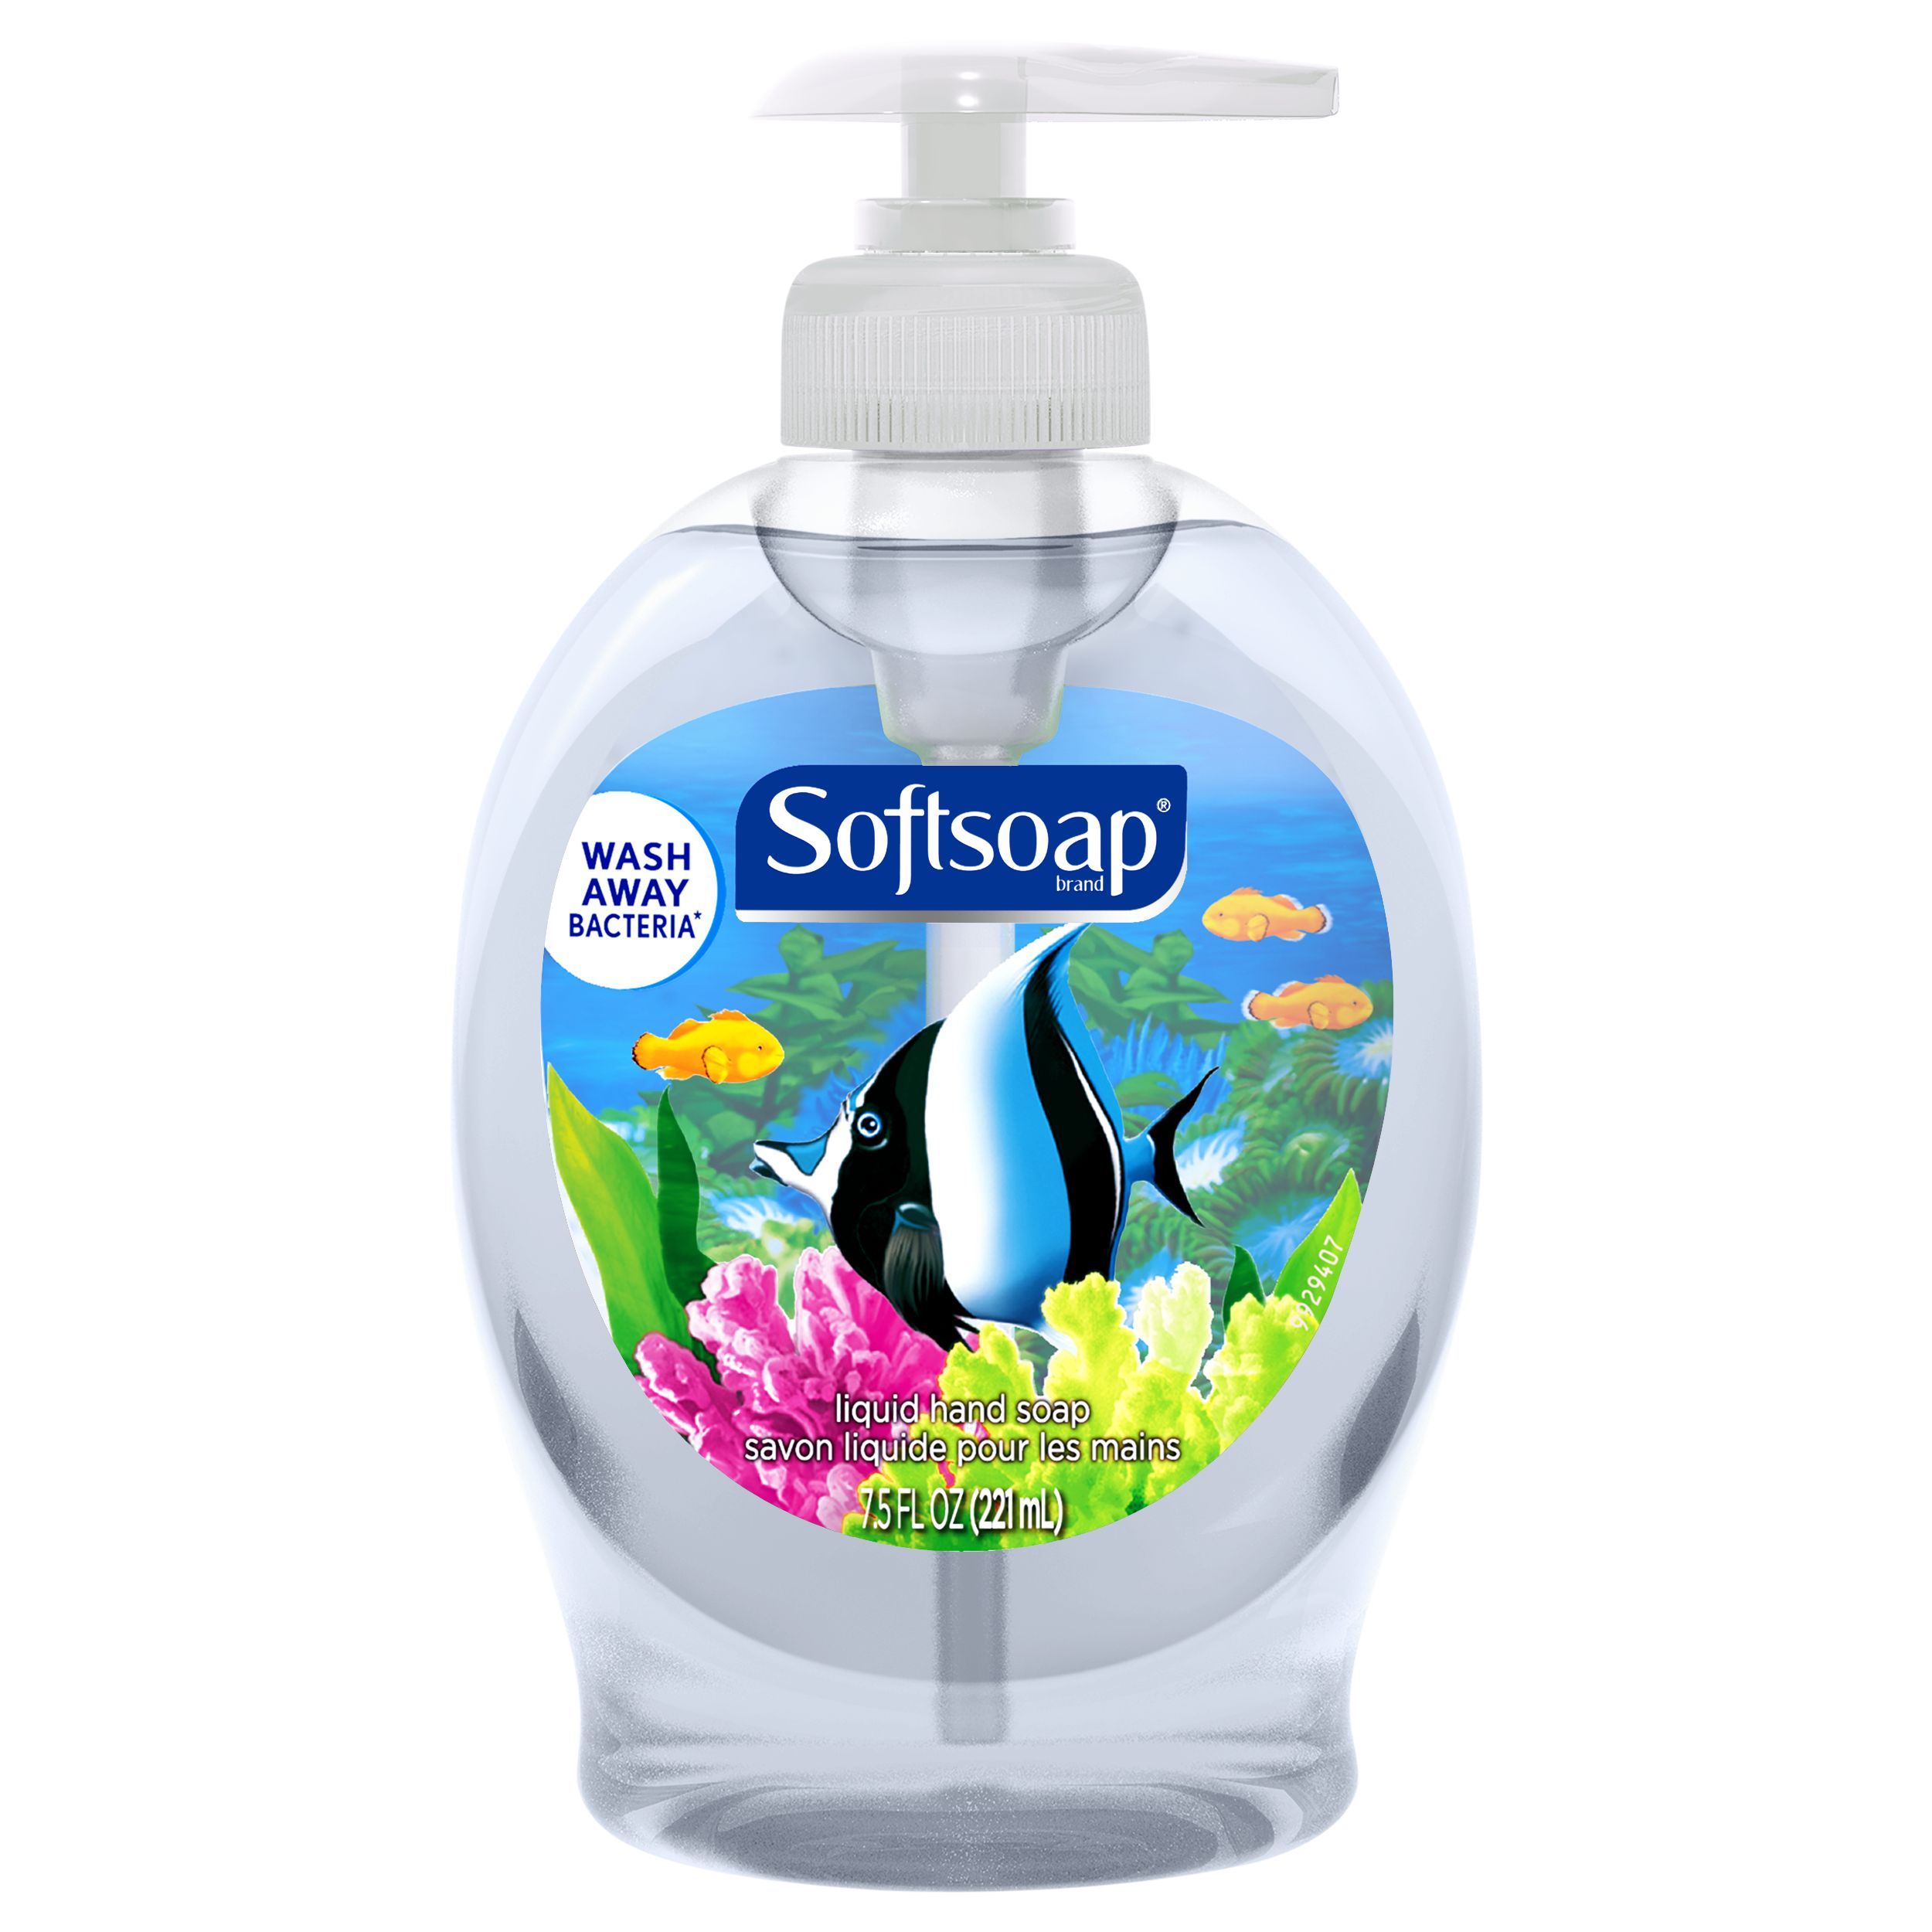 Softsoap Hand Soap, Aquarium Series - 7.5 oz bottle